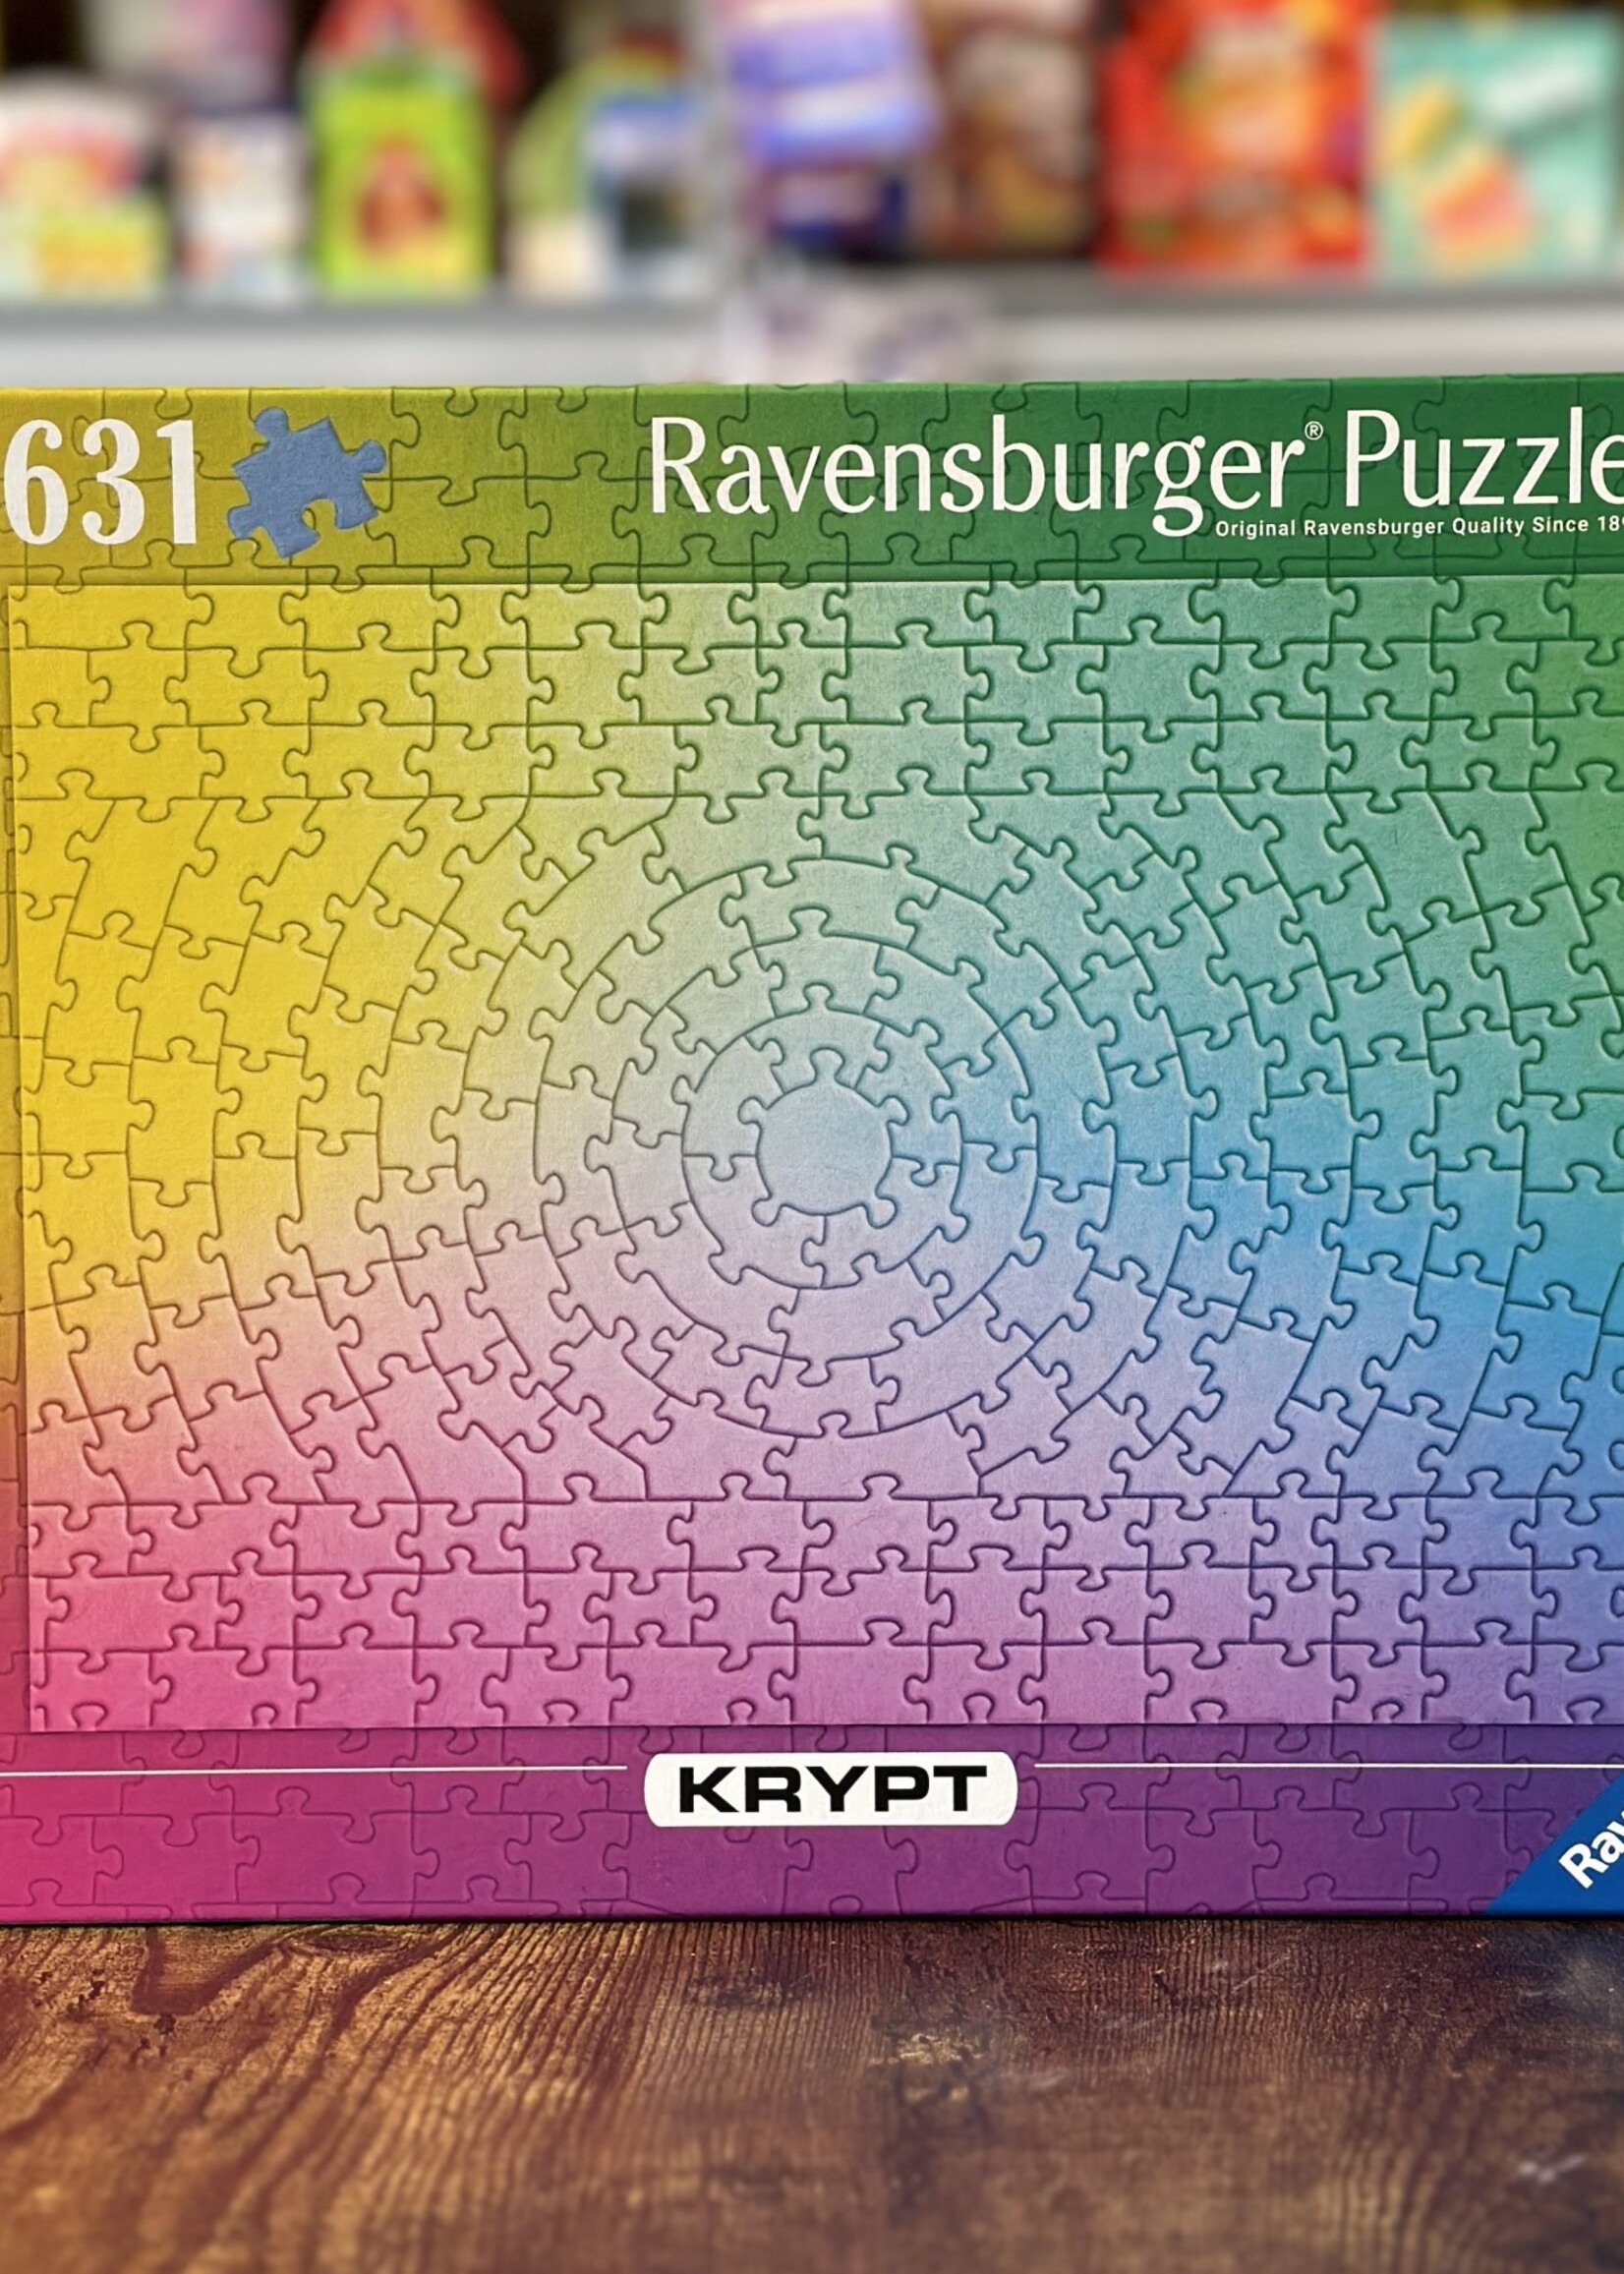 Ravensburger Puzzle - Krypt Gradient 631 Pc.